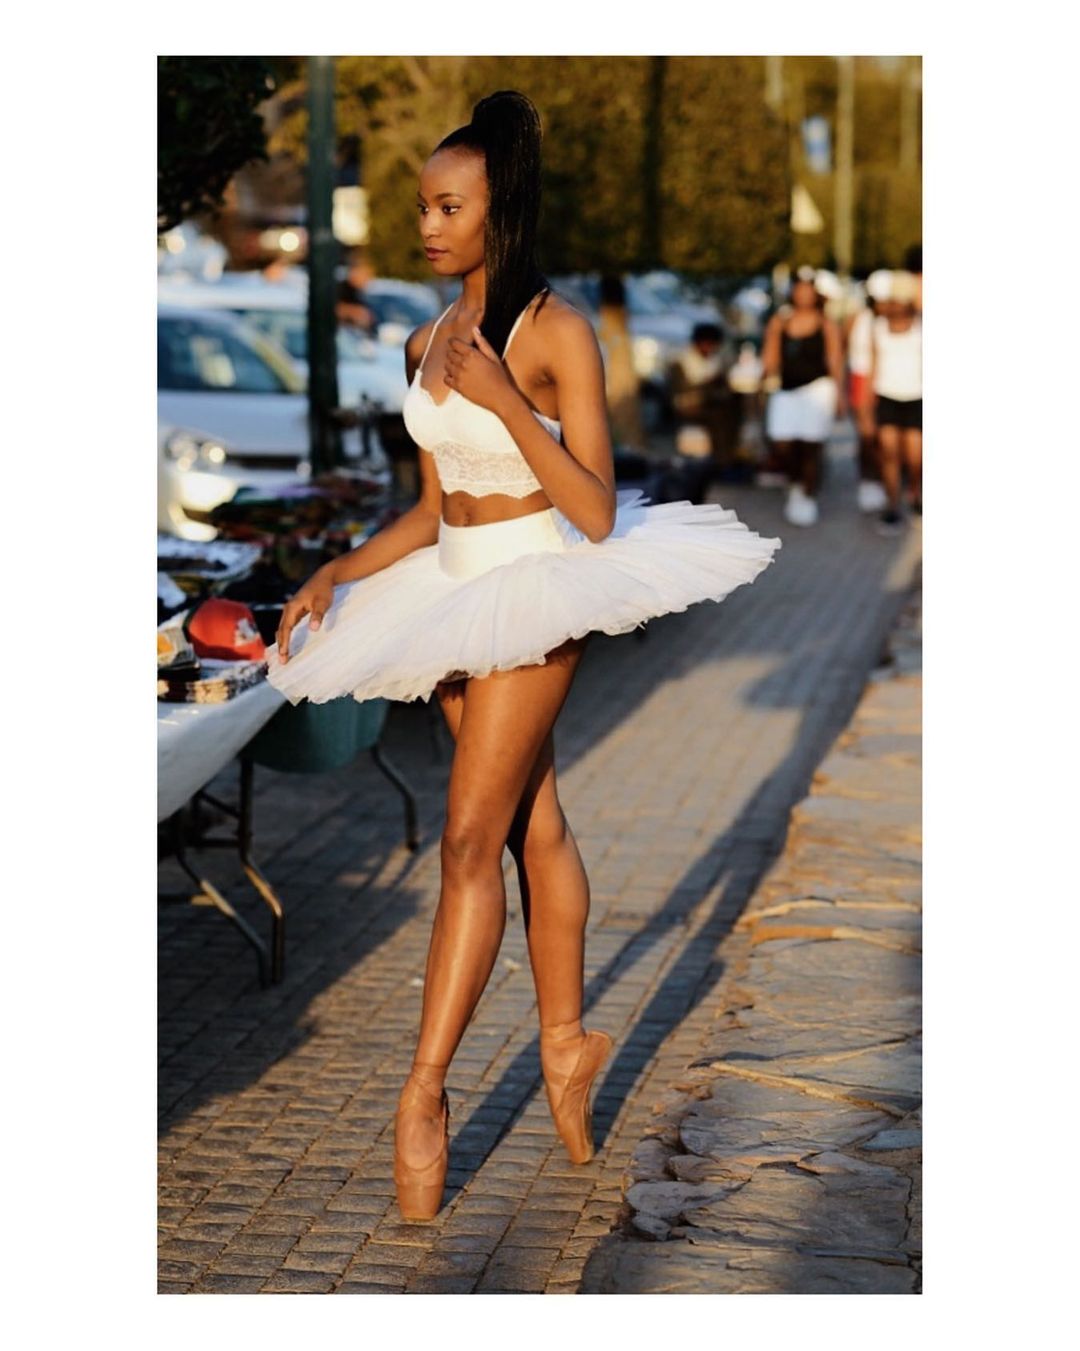 Lalela Mswane cũng biết múa ballet. Đây cũng là bộ môn giúp rèn luyện thân hình thon gọn, săn chắc. 